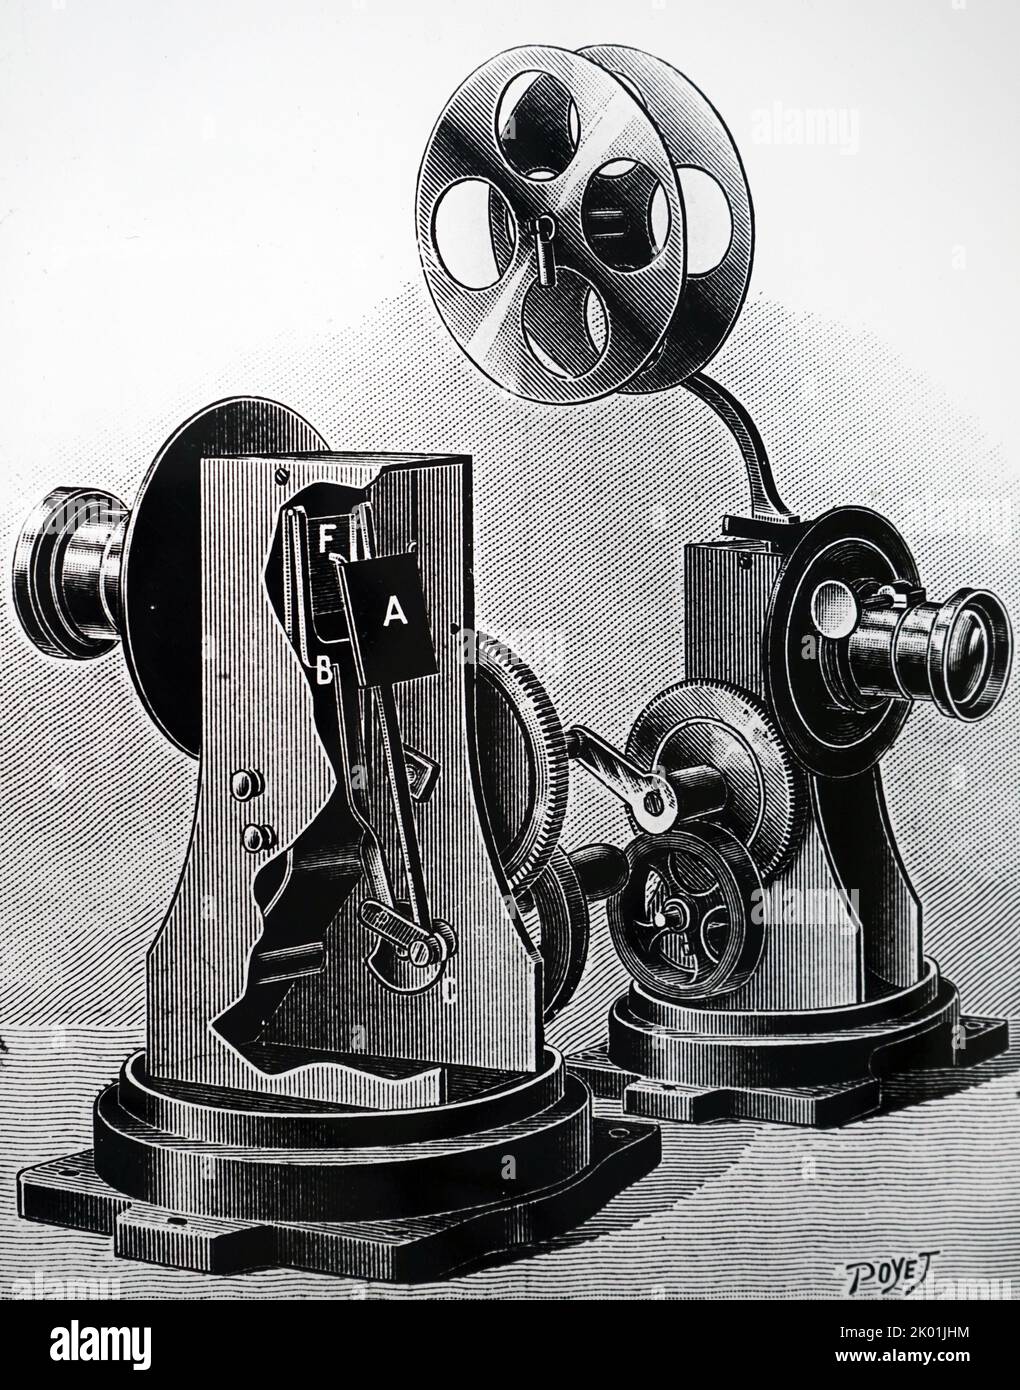 Lo zooscopio. Un proiettore cinematografico, inventato da M Frascourt, che utilizza un otturatore mobile verticale. Foto Stock